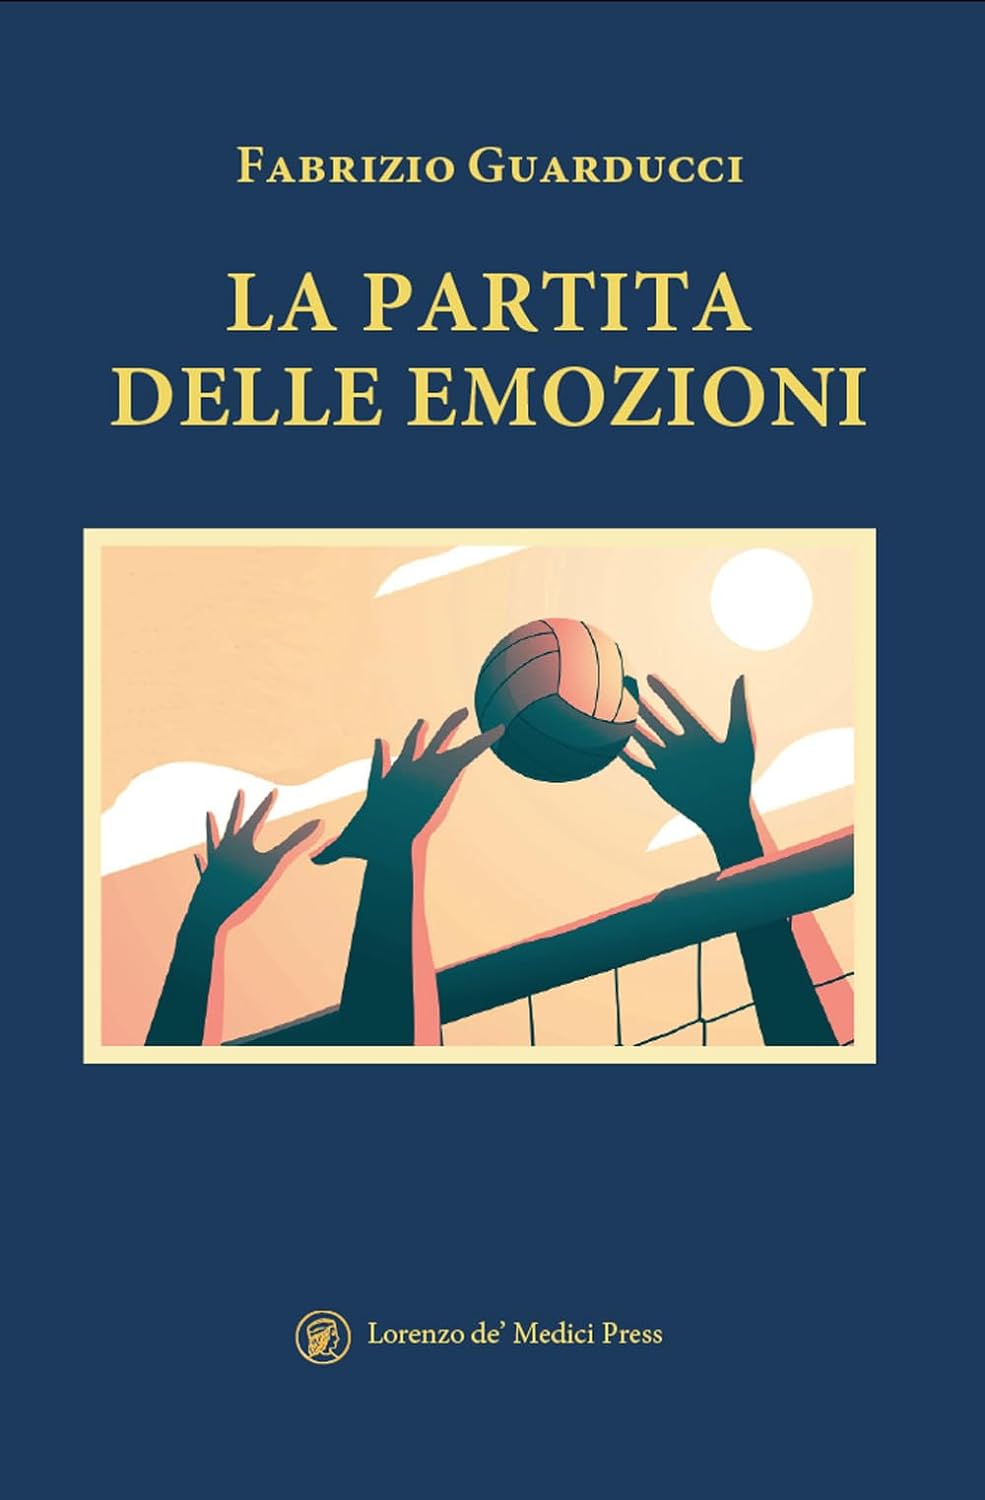 “La  partita  delle emozioni” di  Fabrizio Guarducci.   Il  nuovo  libro  dello  scrittore e regista  fiorentino è stato presentato  nei giorni scorsi  nel foyer  del Teatro di Cestello